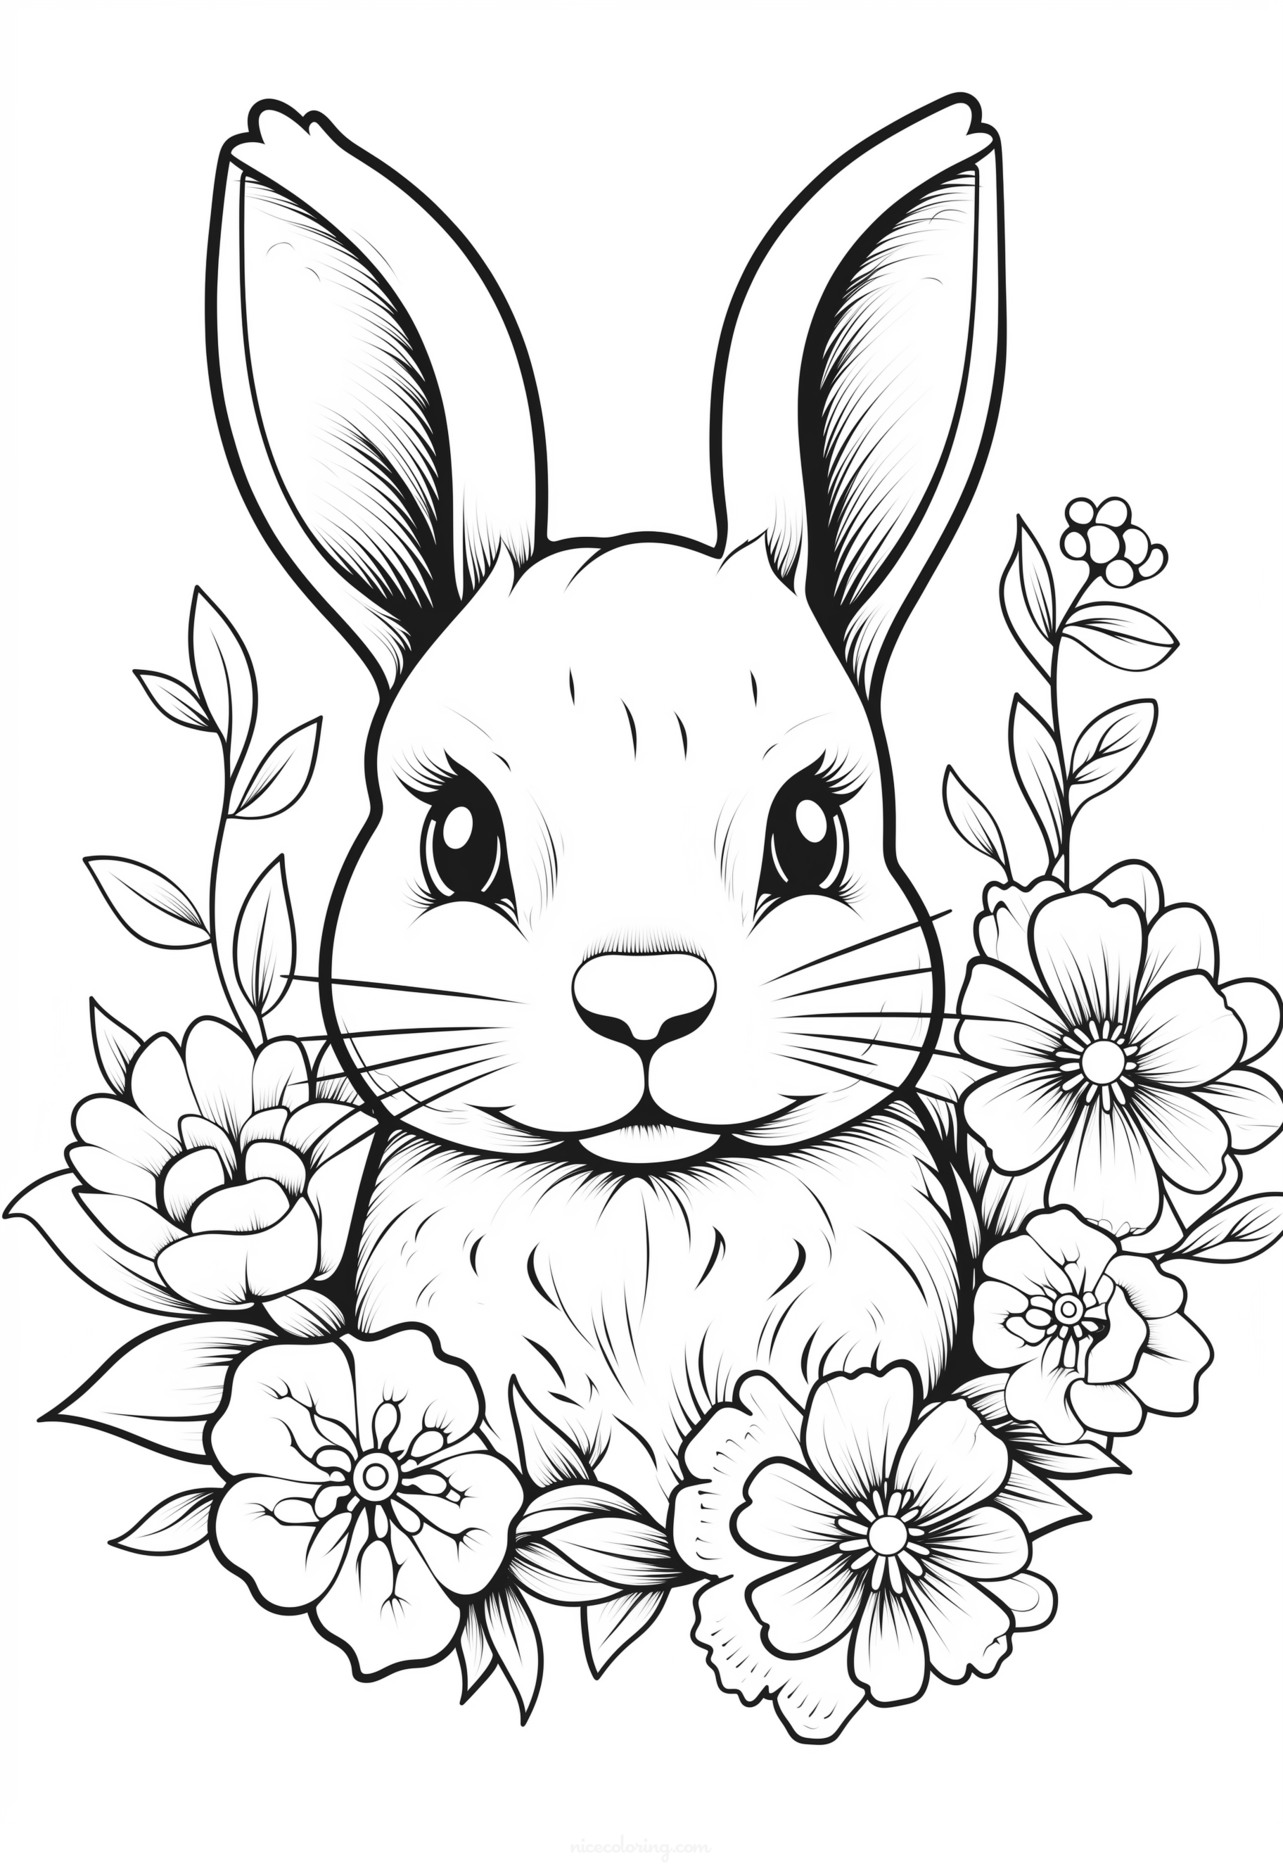 꽃에 둘러싸인 귀여운 토끼